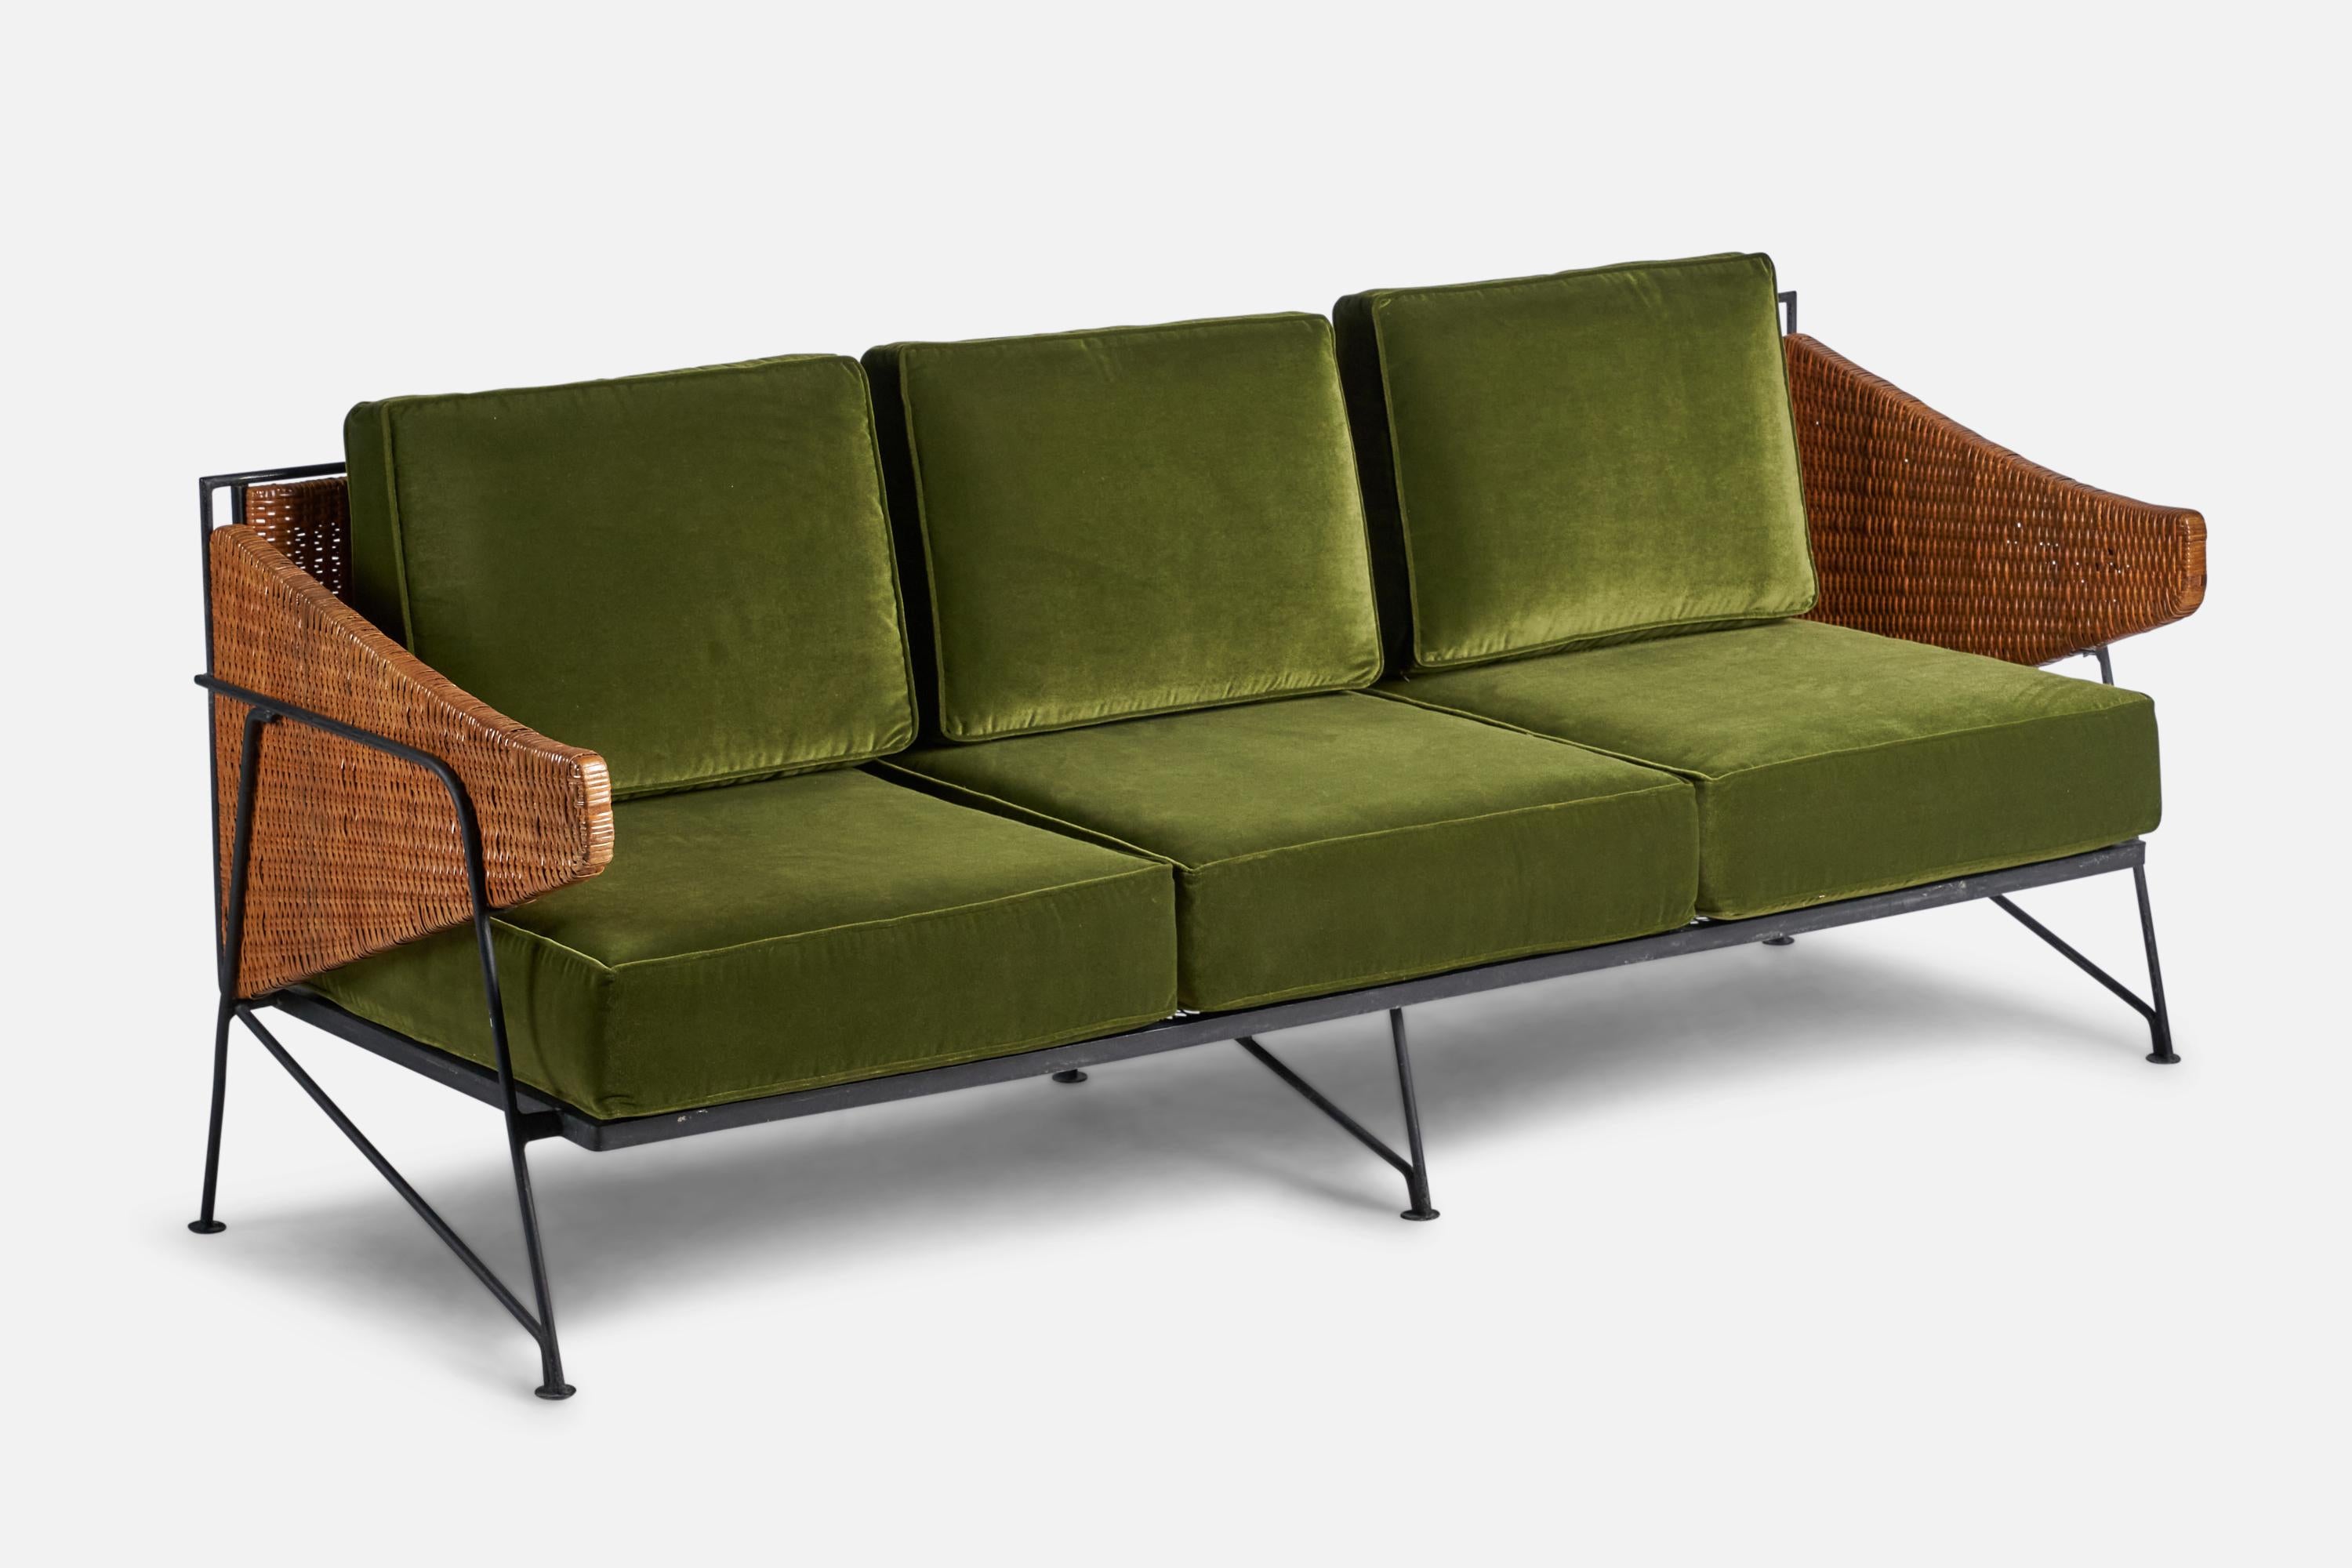 Canapé en fer laqué noir, rotin et velours vert conçu et produit aux États-Unis, 1950. 

Hauteur d'assise de 16,5 pouces
